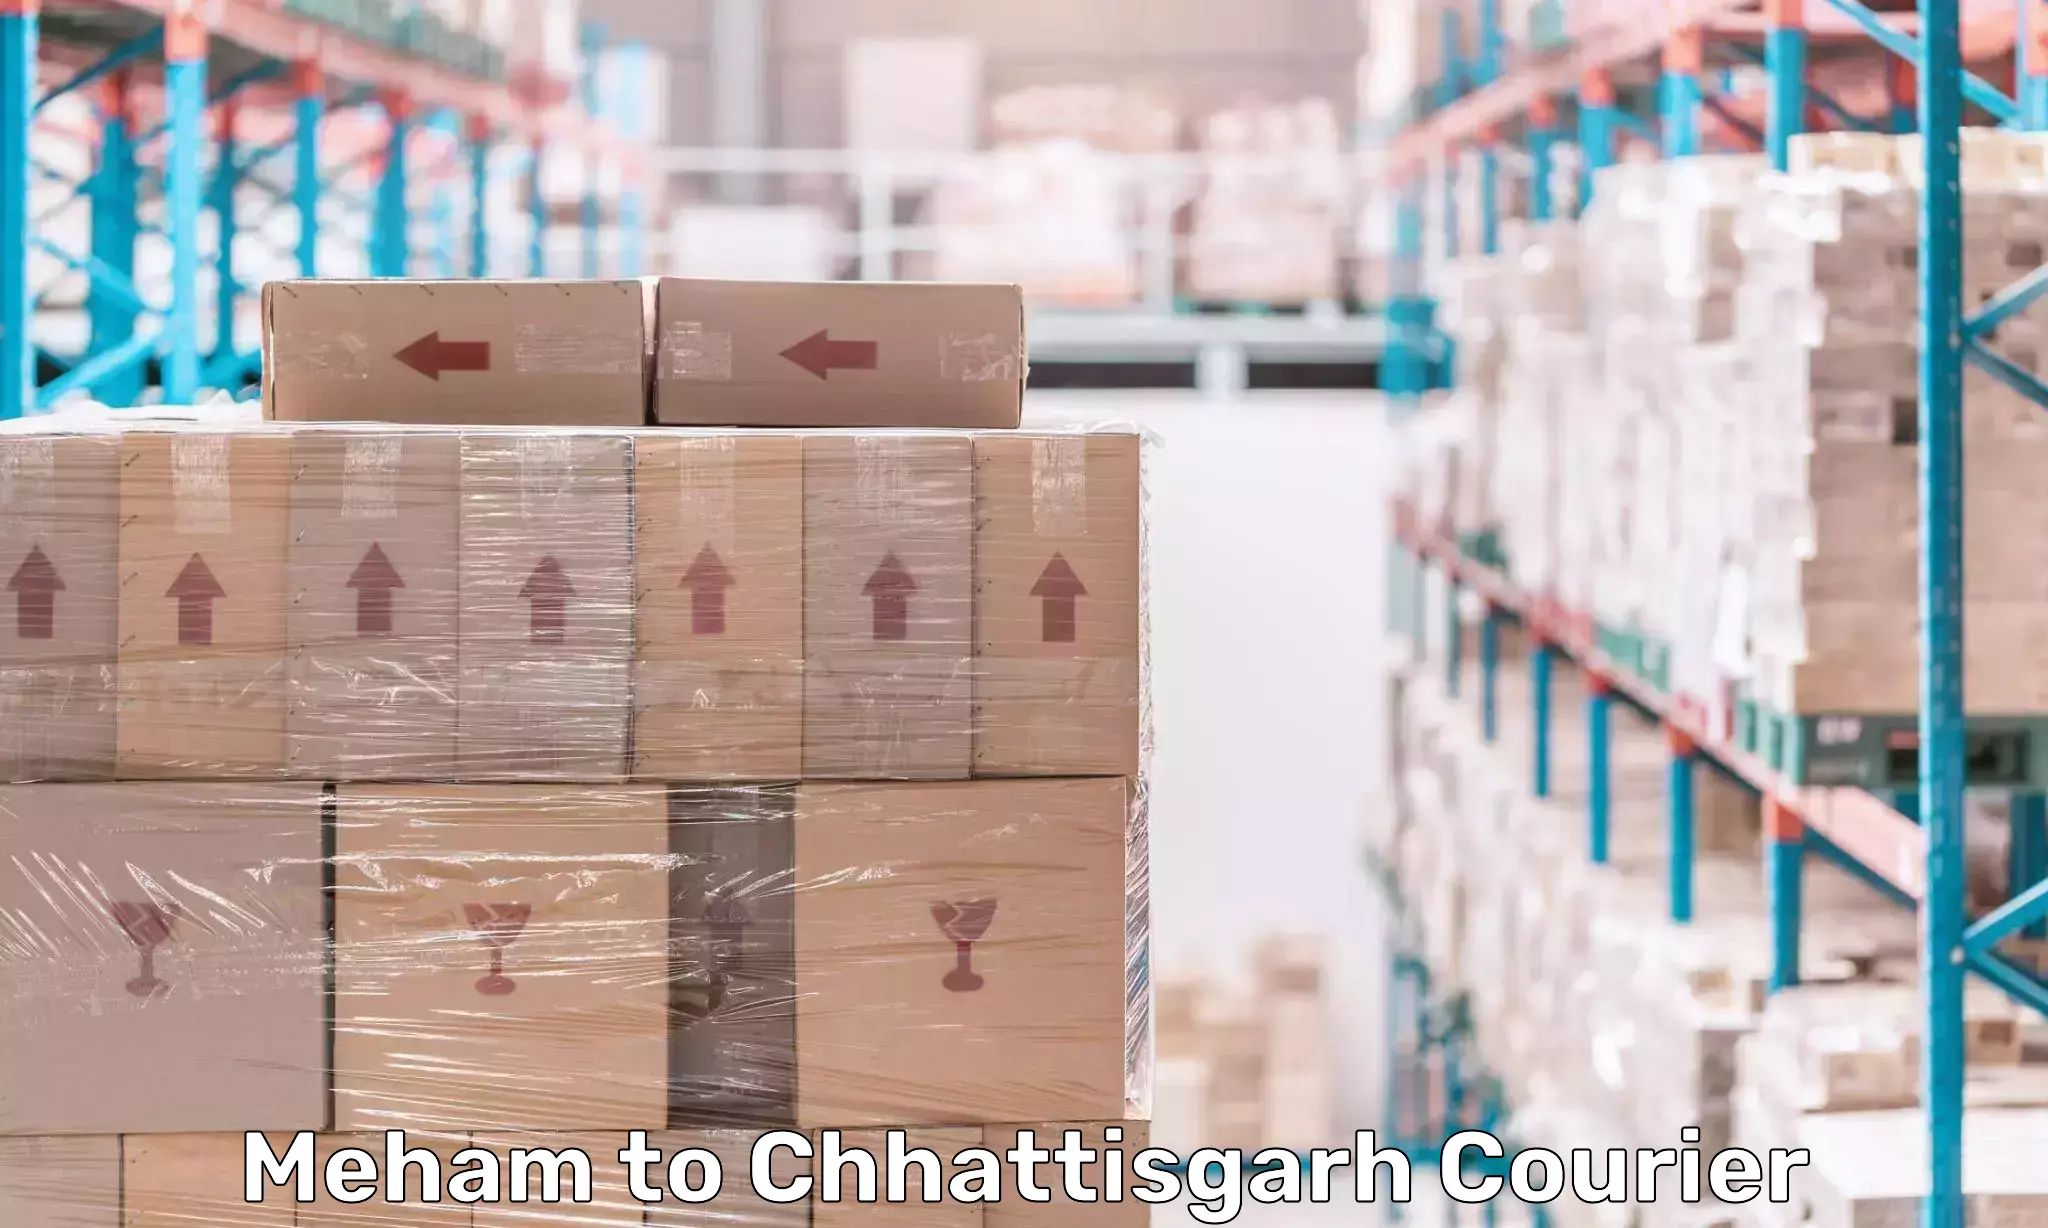 Urgent courier needs Meham to Bijapur Chhattisgarh